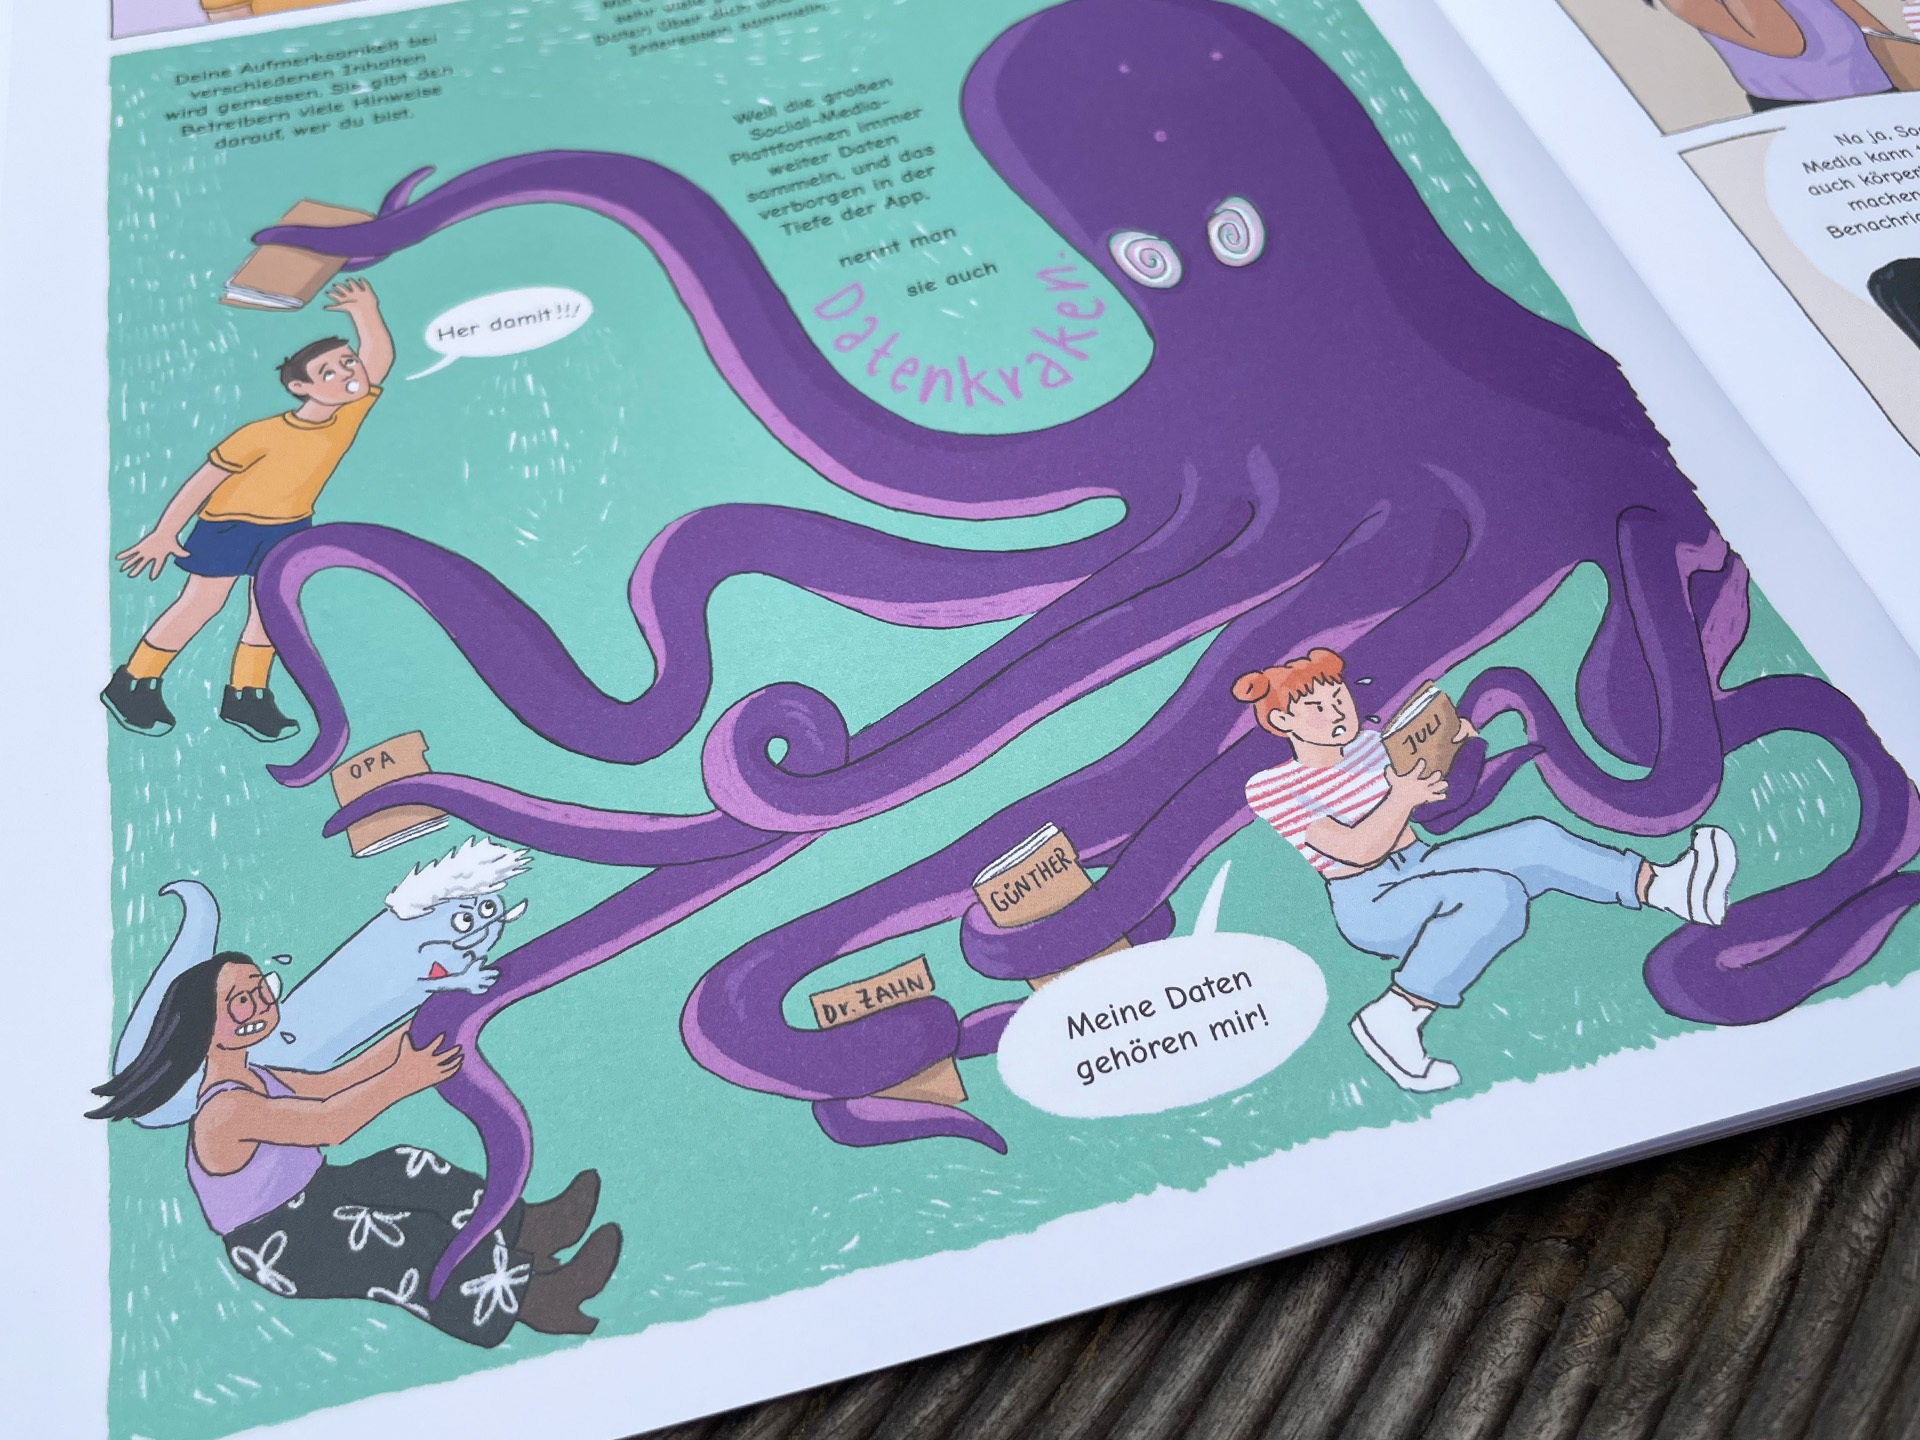 Ausschnitt aus dem Science Comic "Die Entdeckung der Filterblase" - ein Science Comic für Kinder im Alter von 10-14 Jahren zum Thema Social Media, Algorithmen und Fake News. Abgebildet ist eine Detailaufnahme aus dem Heft.